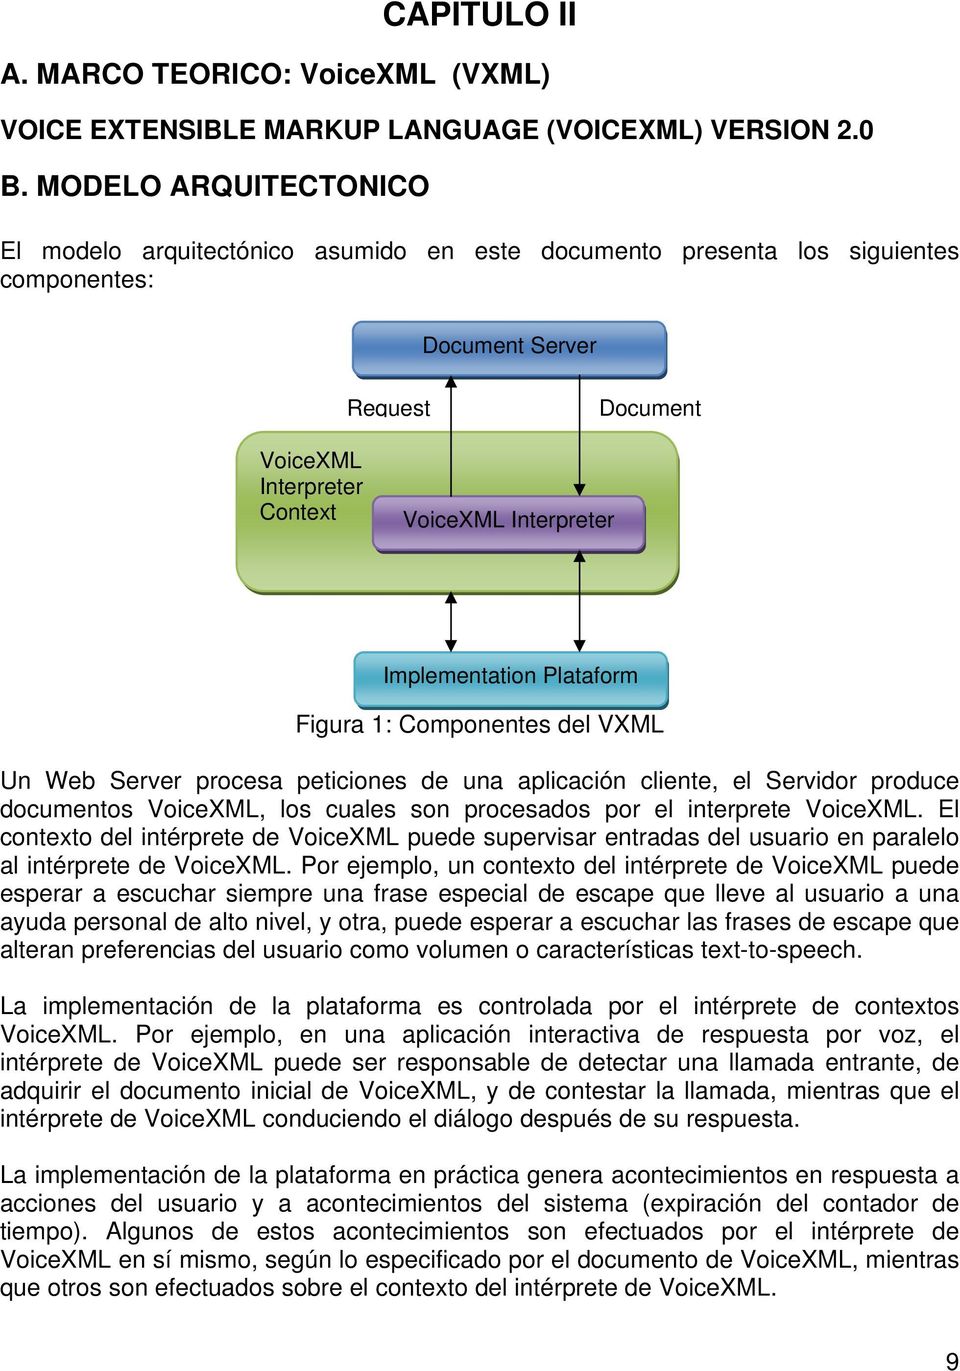 Implementation Plataform Figura 1: Componentes del VXML Un Web Server procesa peticiones de una aplicación cliente, el Servidor produce documentos VoiceXML, los cuales son procesados por el